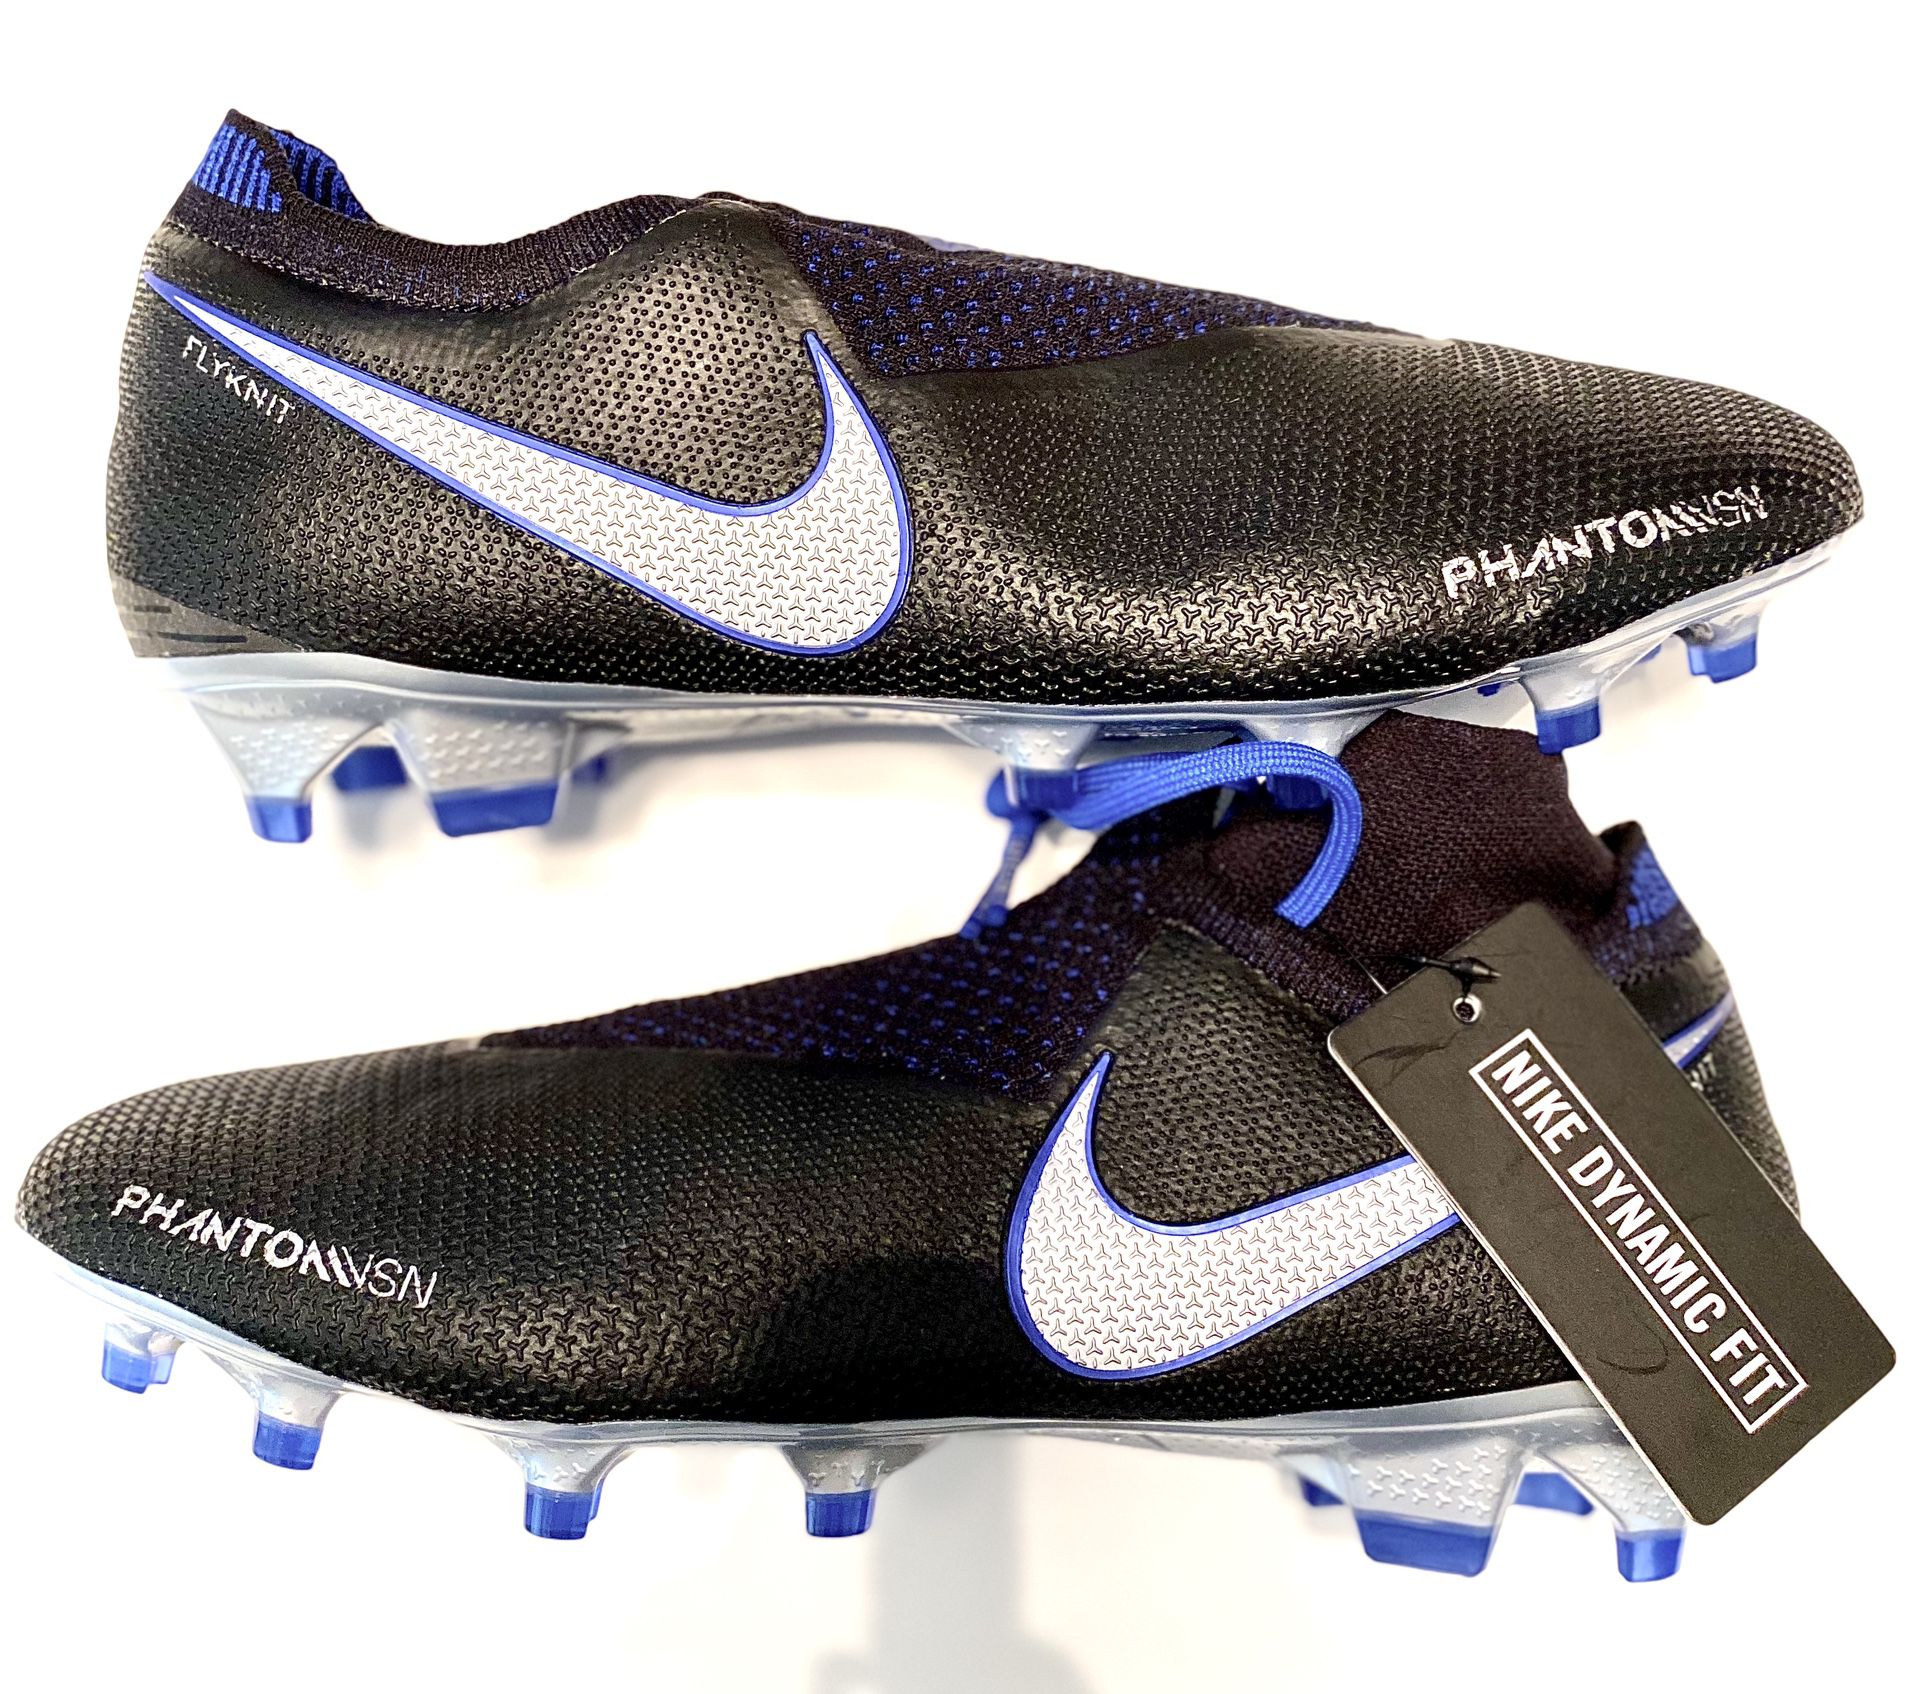 Nike Phantom VSN Vision Elite DF FG Soccer Cleats Black/Blue AO3262-004